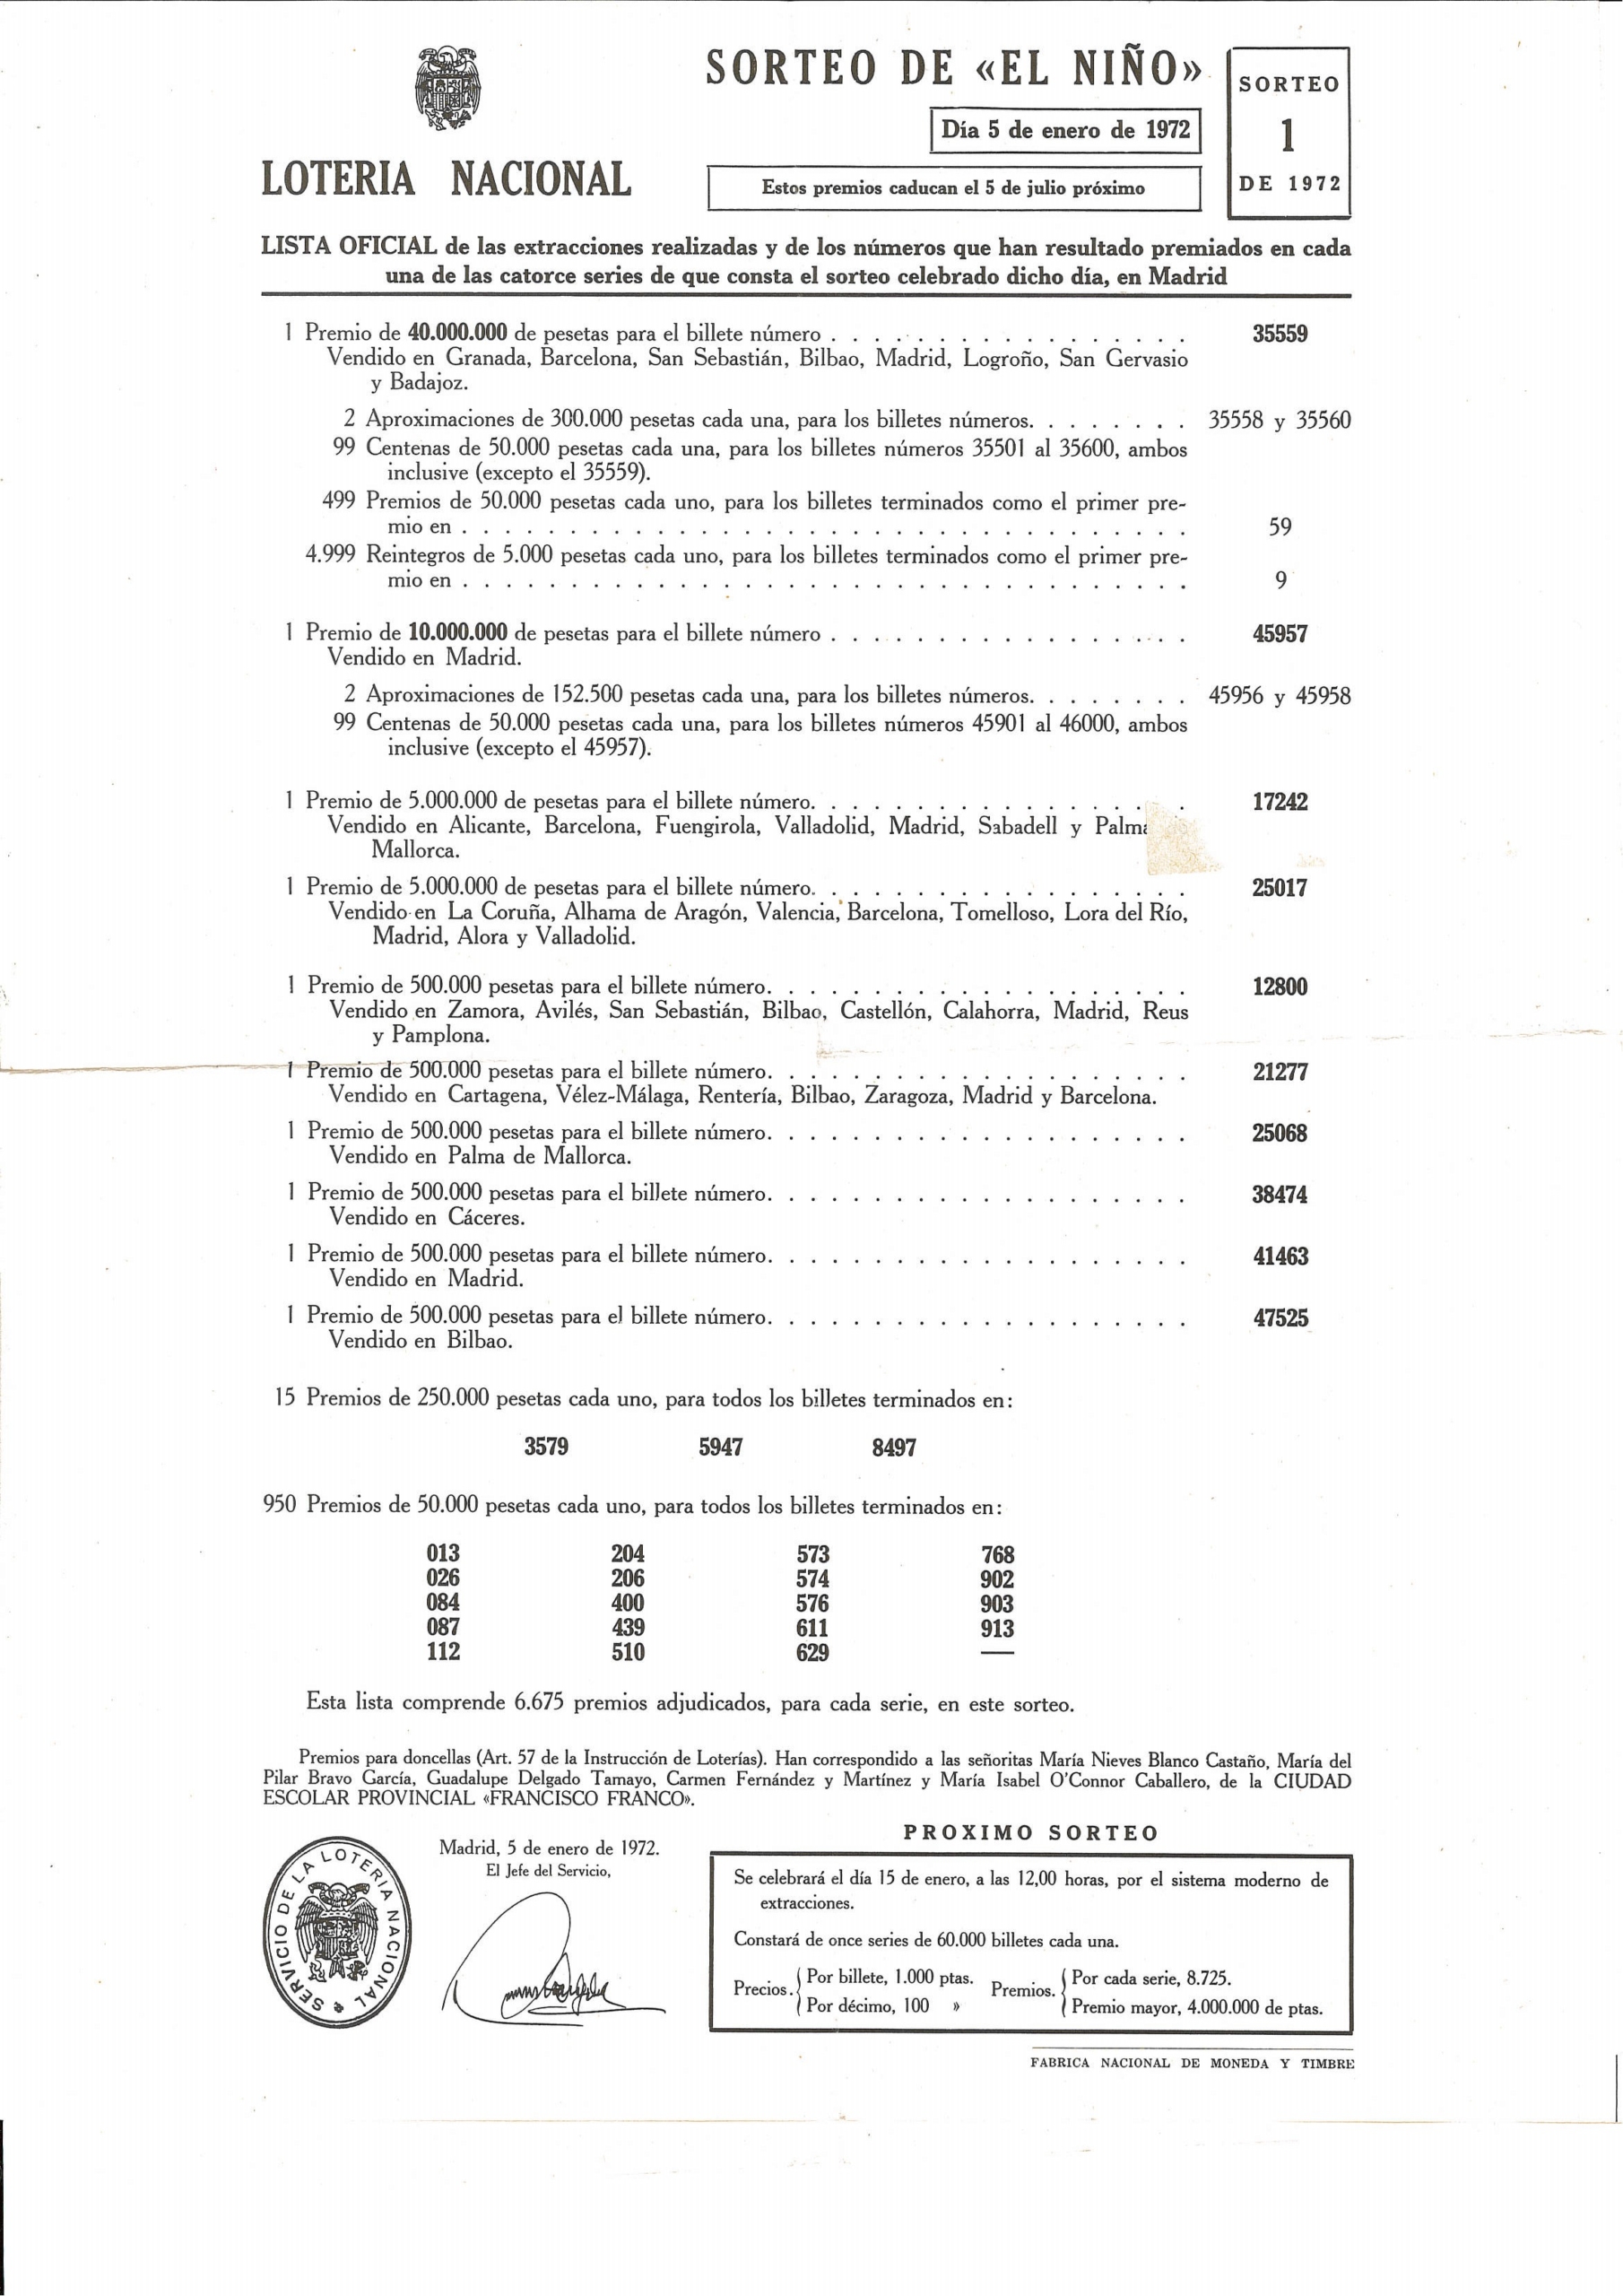 Lista Oficial de PREMIOS del Sorteo de "EL NIÑO" de 1972